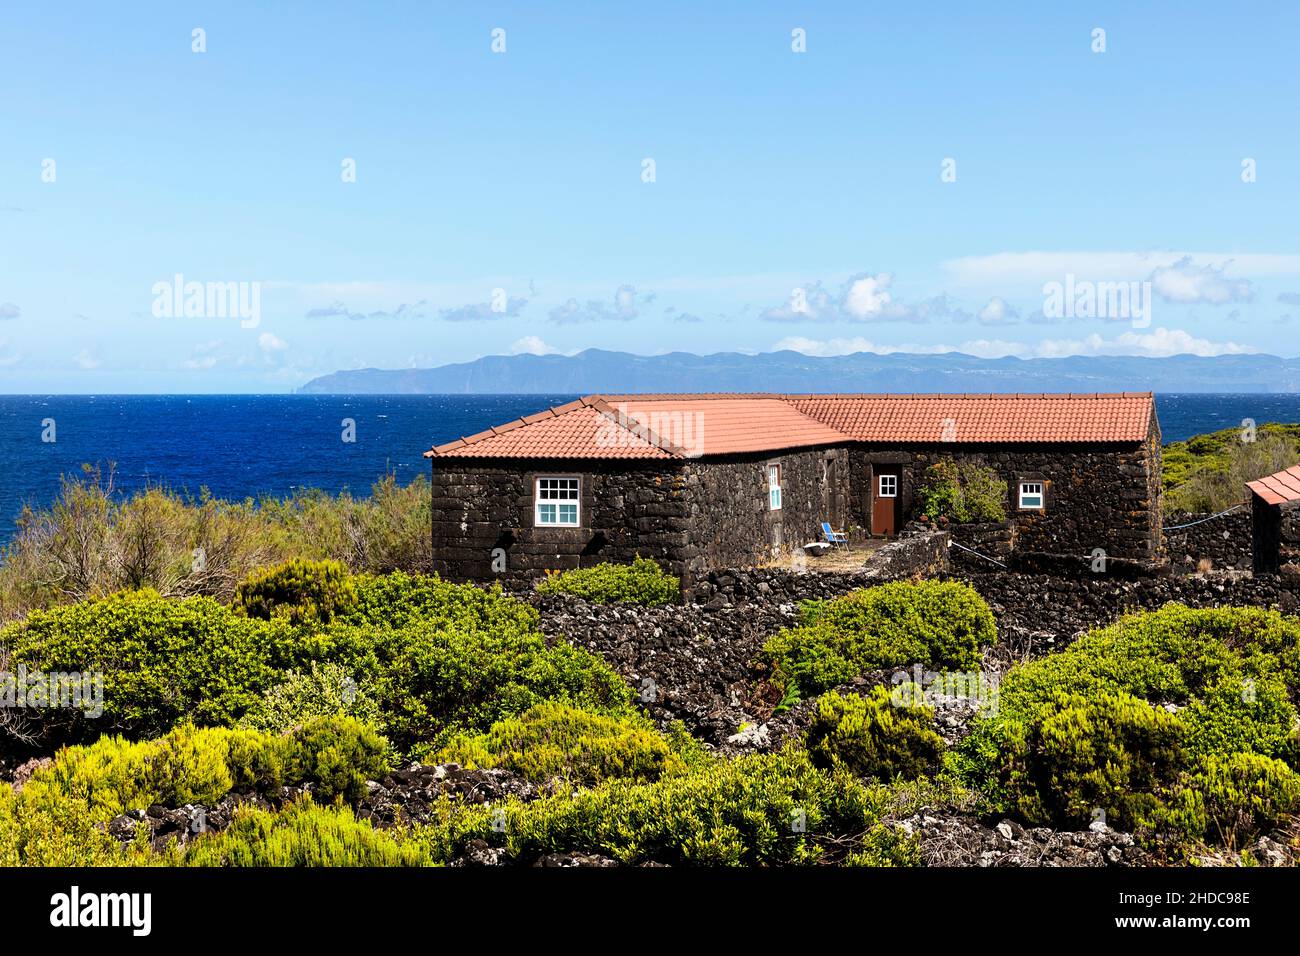 Maison en pierre rurale typique faite de roches volcaniques sur l'île de Pico avec une belle vue sur la mer et l'île de Sao Jorge, Açores, Portugal Banque D'Images